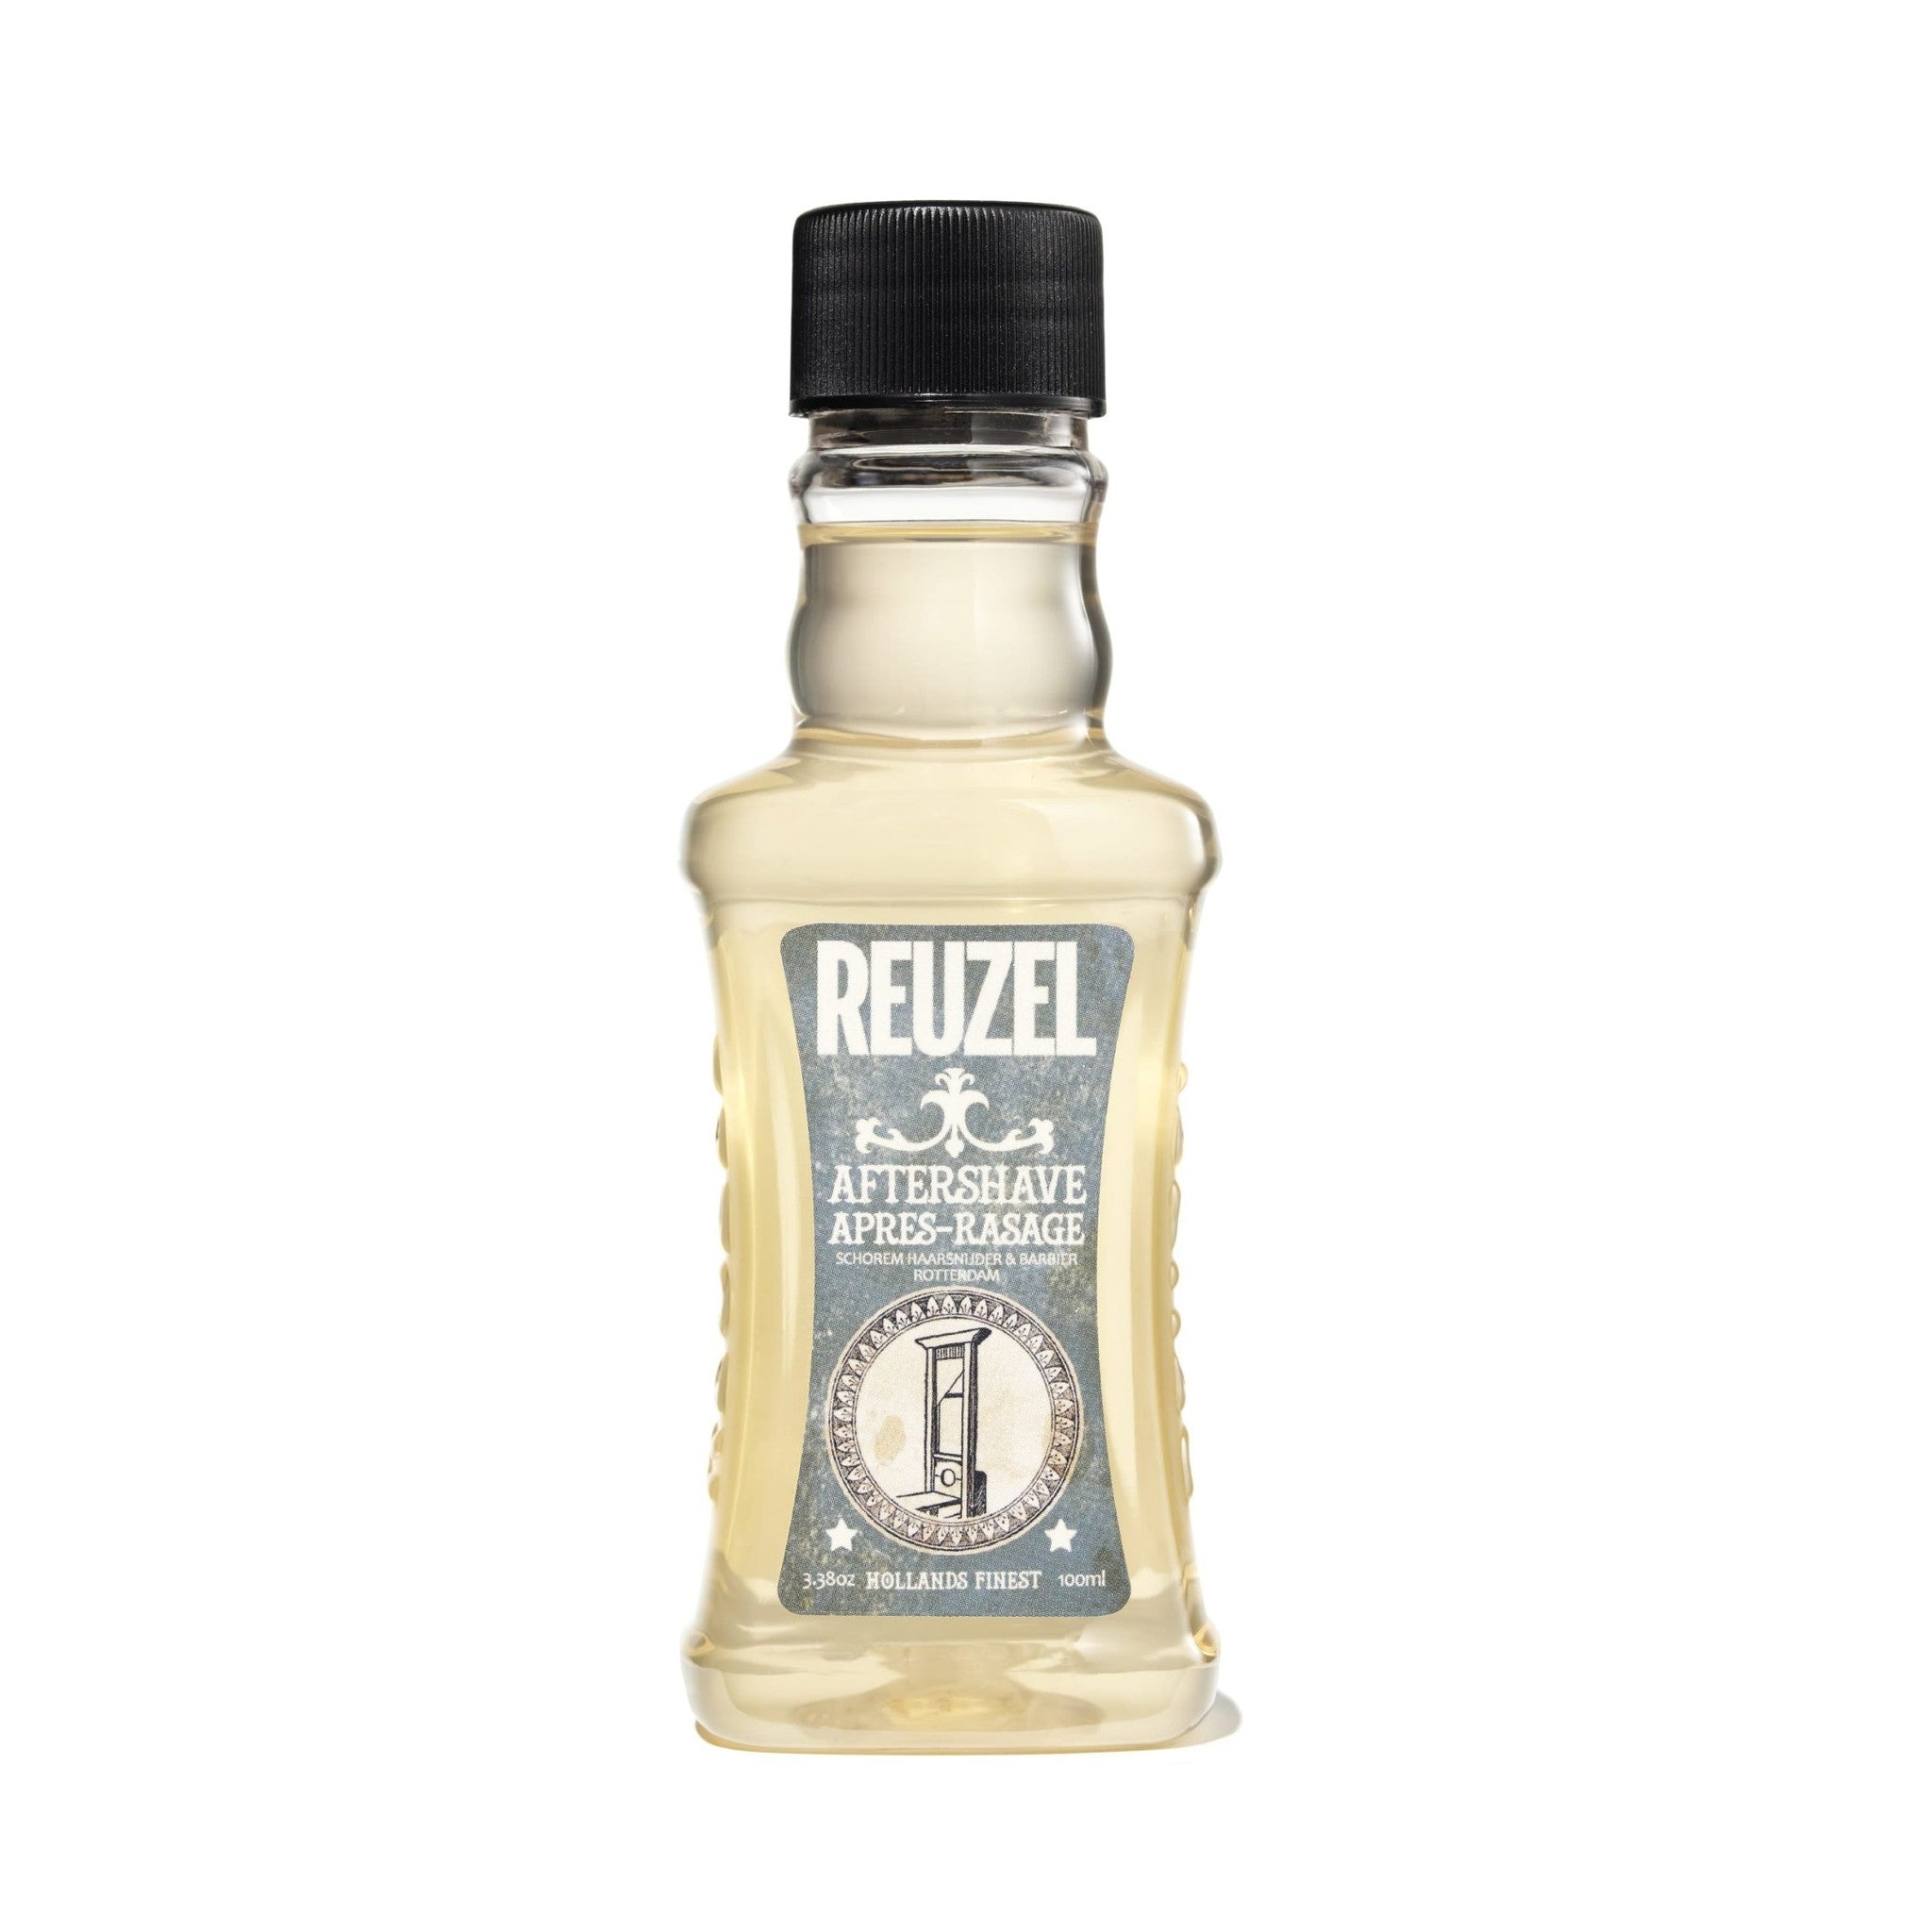 Reuzel Aftershave 